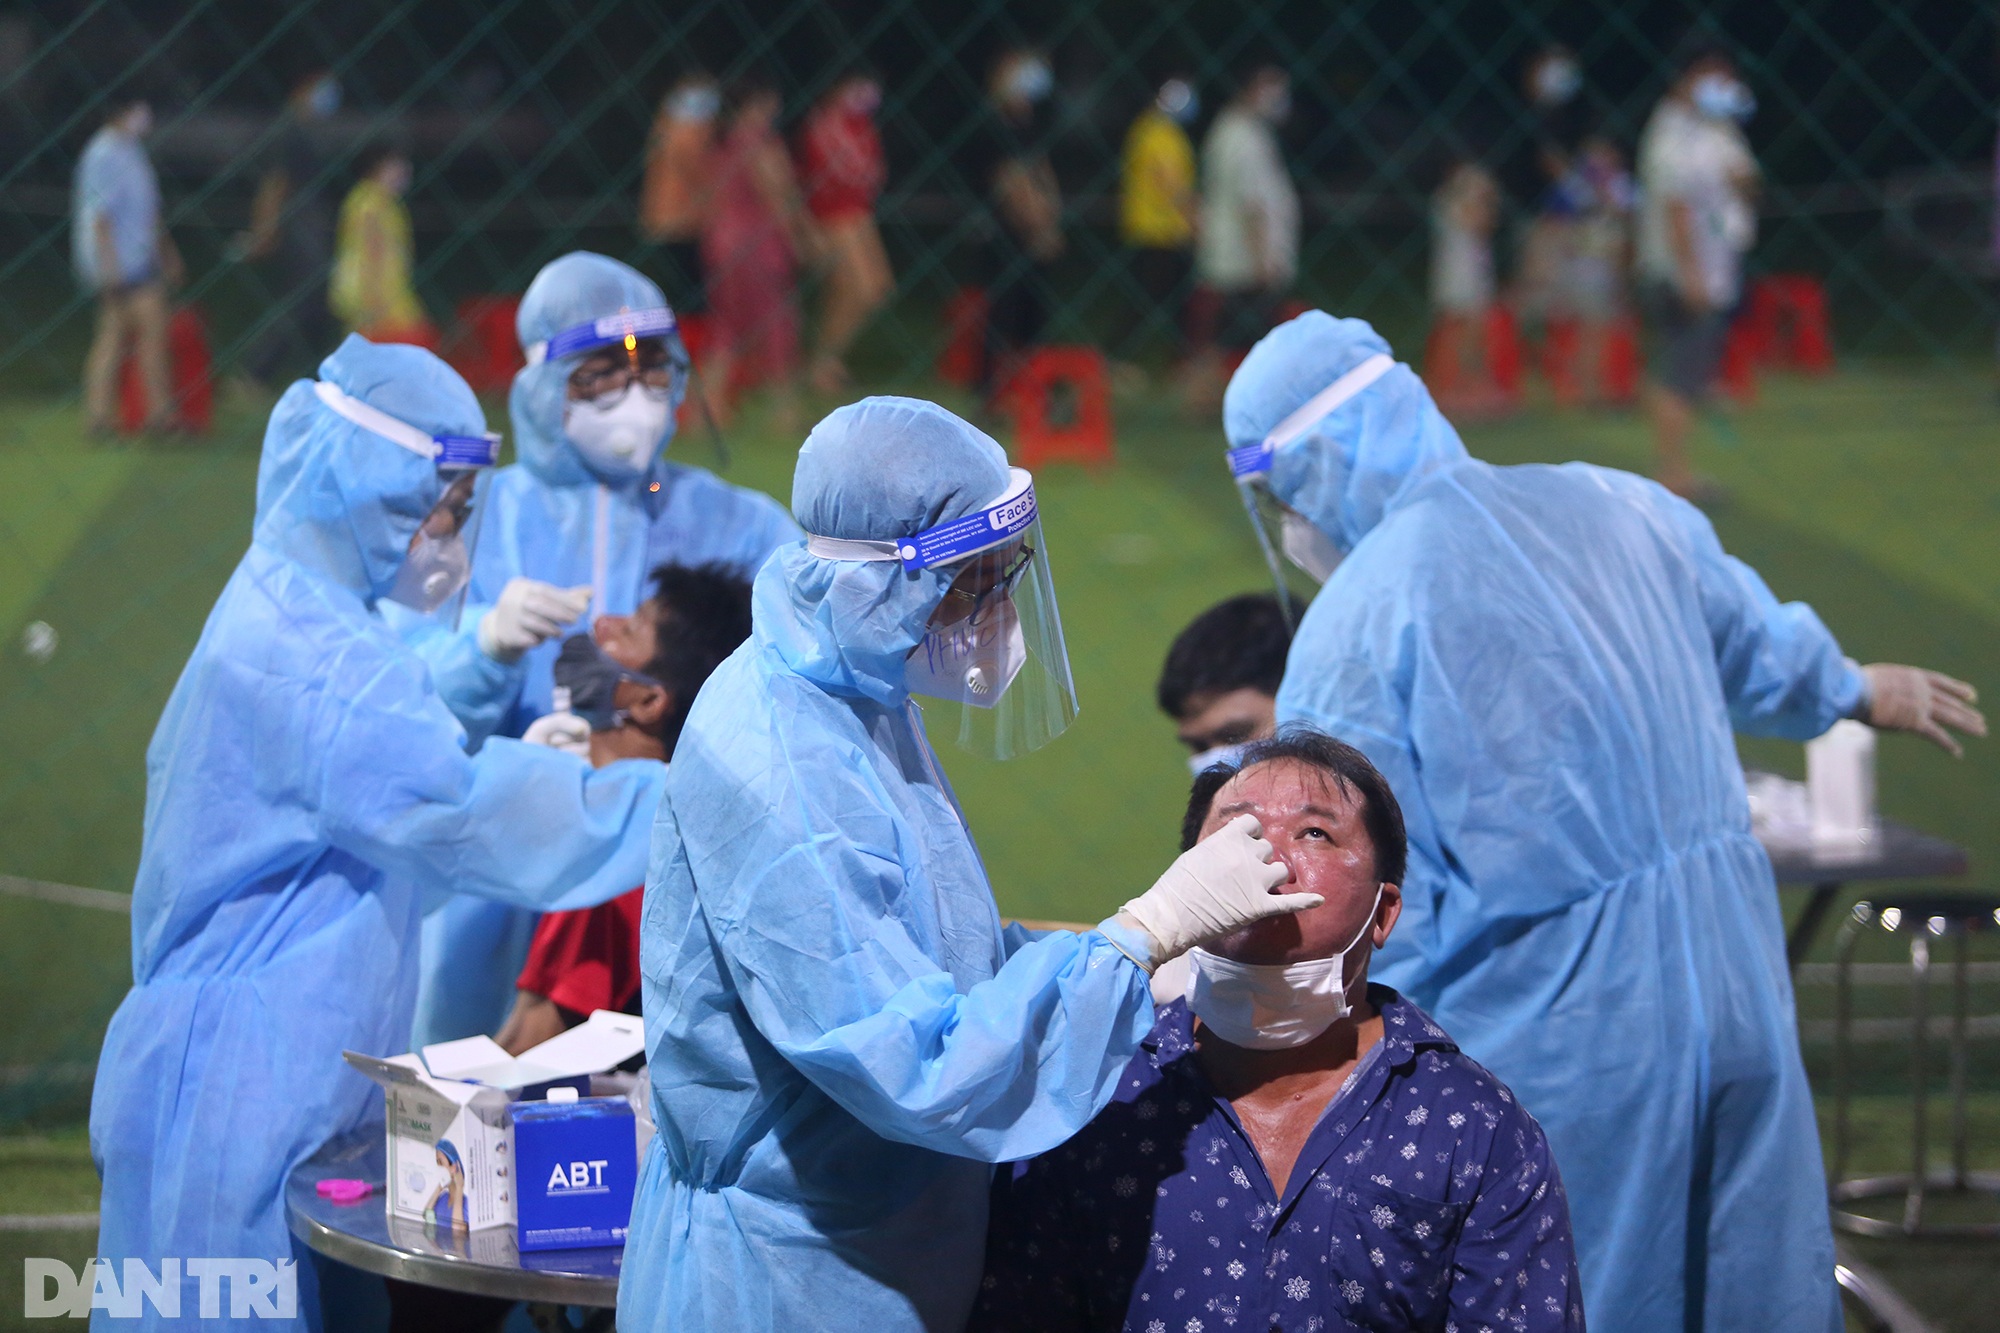 Hàng nghìn người dân Sài Gòn xếp hàng lấy mẫu xét nghiệm Covid-19 trong đêm - 7